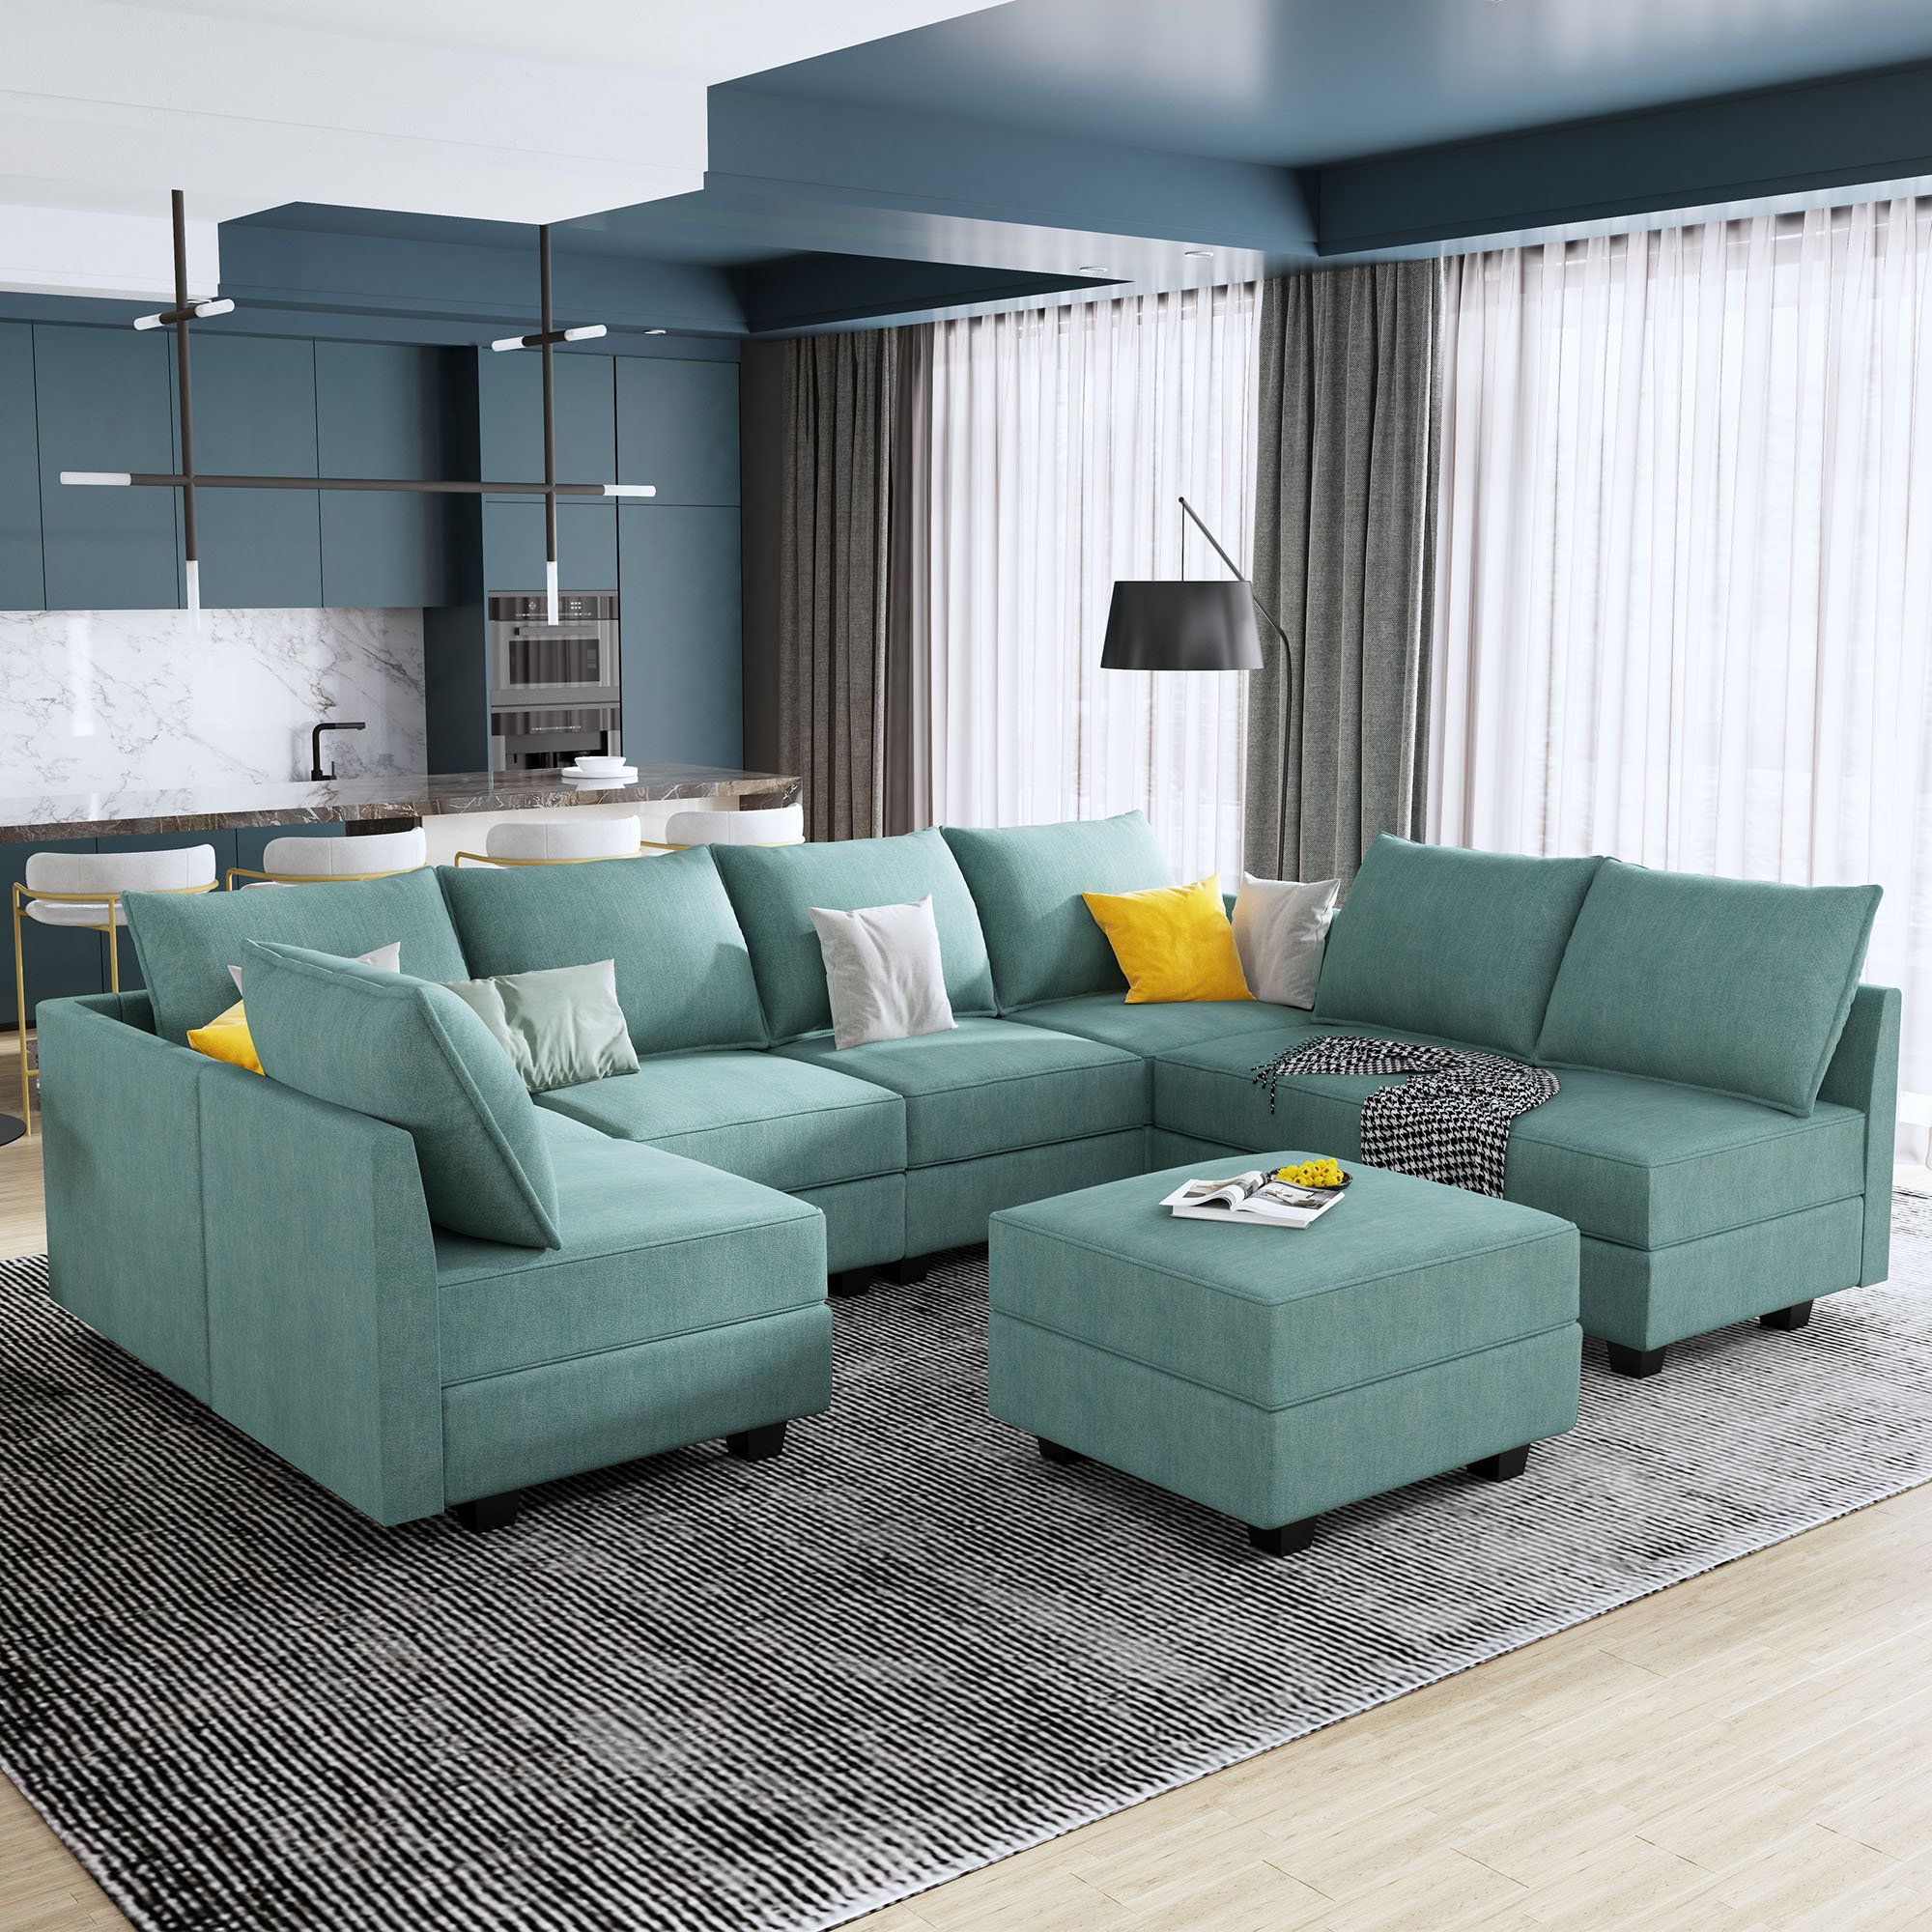 Latitude Run® 8 – Piece Modular U Shape Sectional Sofa With Ottoman &  Reviews | Wayfair With Regard To U Shaped Modular Sectional Sofas (View 12 of 20)